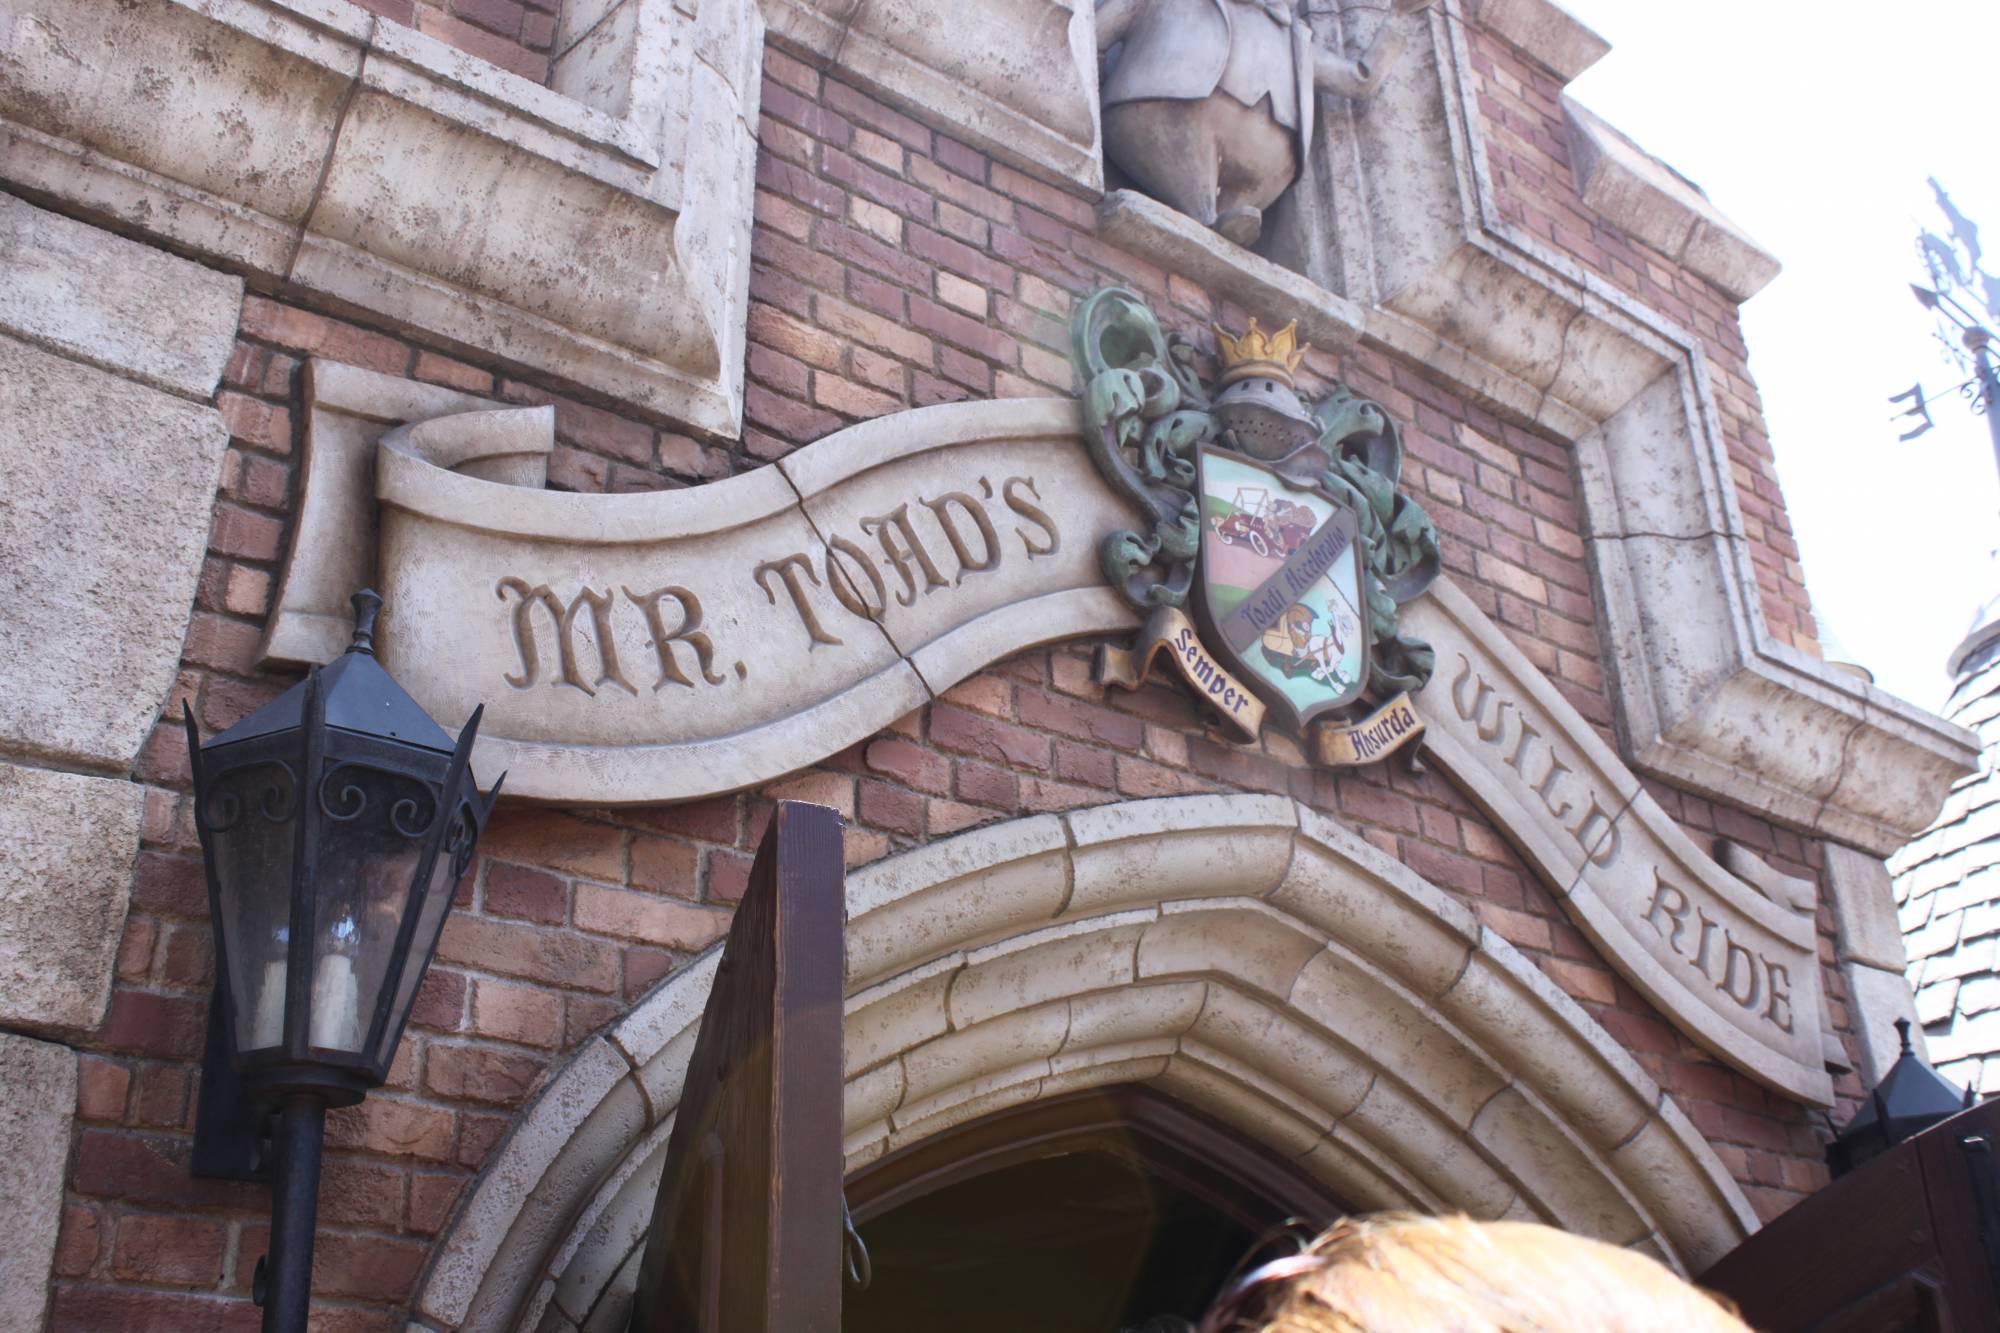 Disneyland - Mr. Toad's Wild Ride